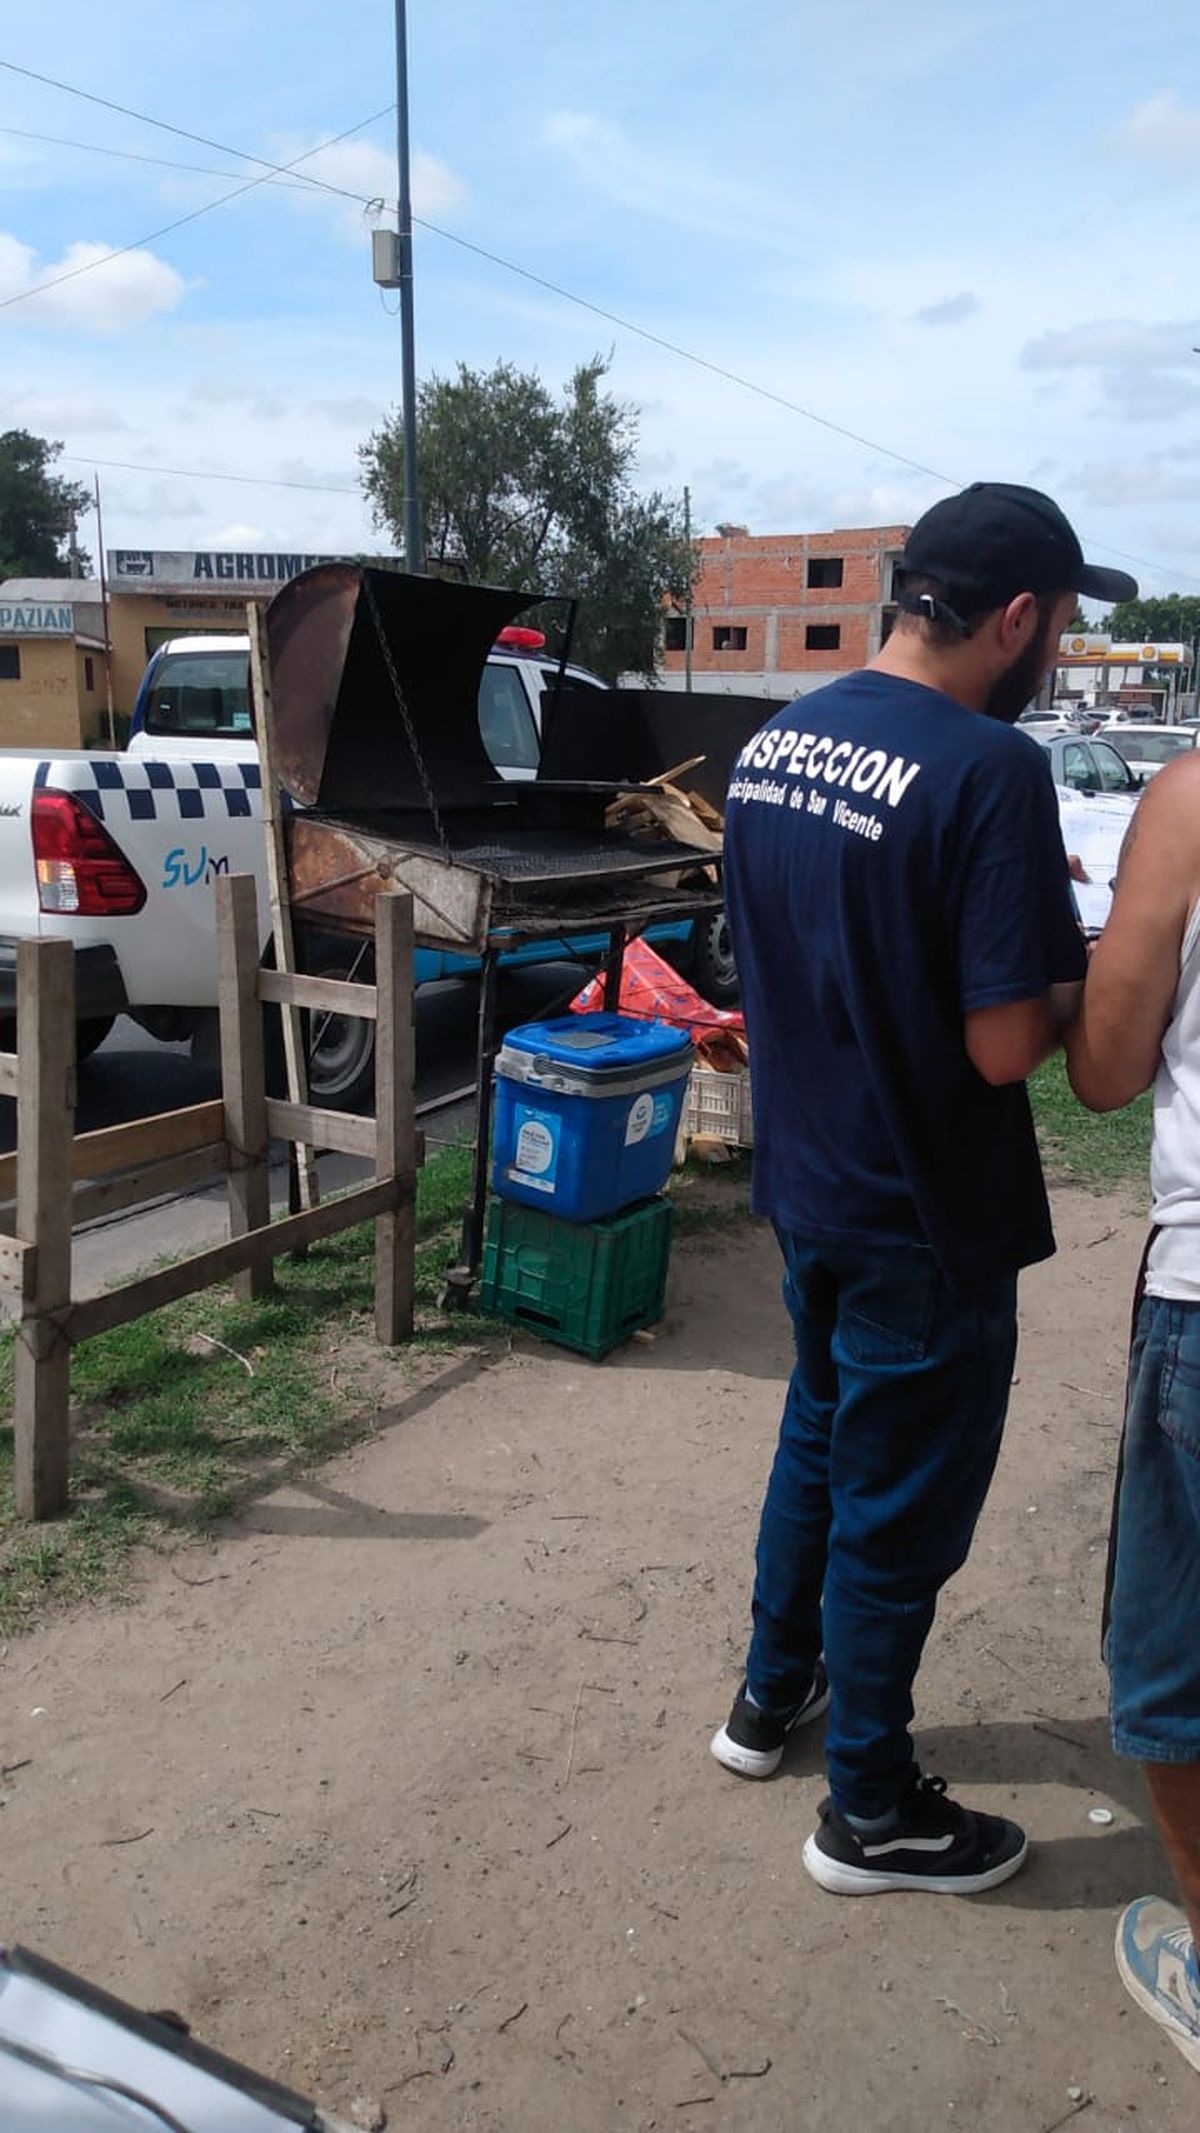 Clausuran puestos de comida callejera en San Vicente y Alejandro Korn